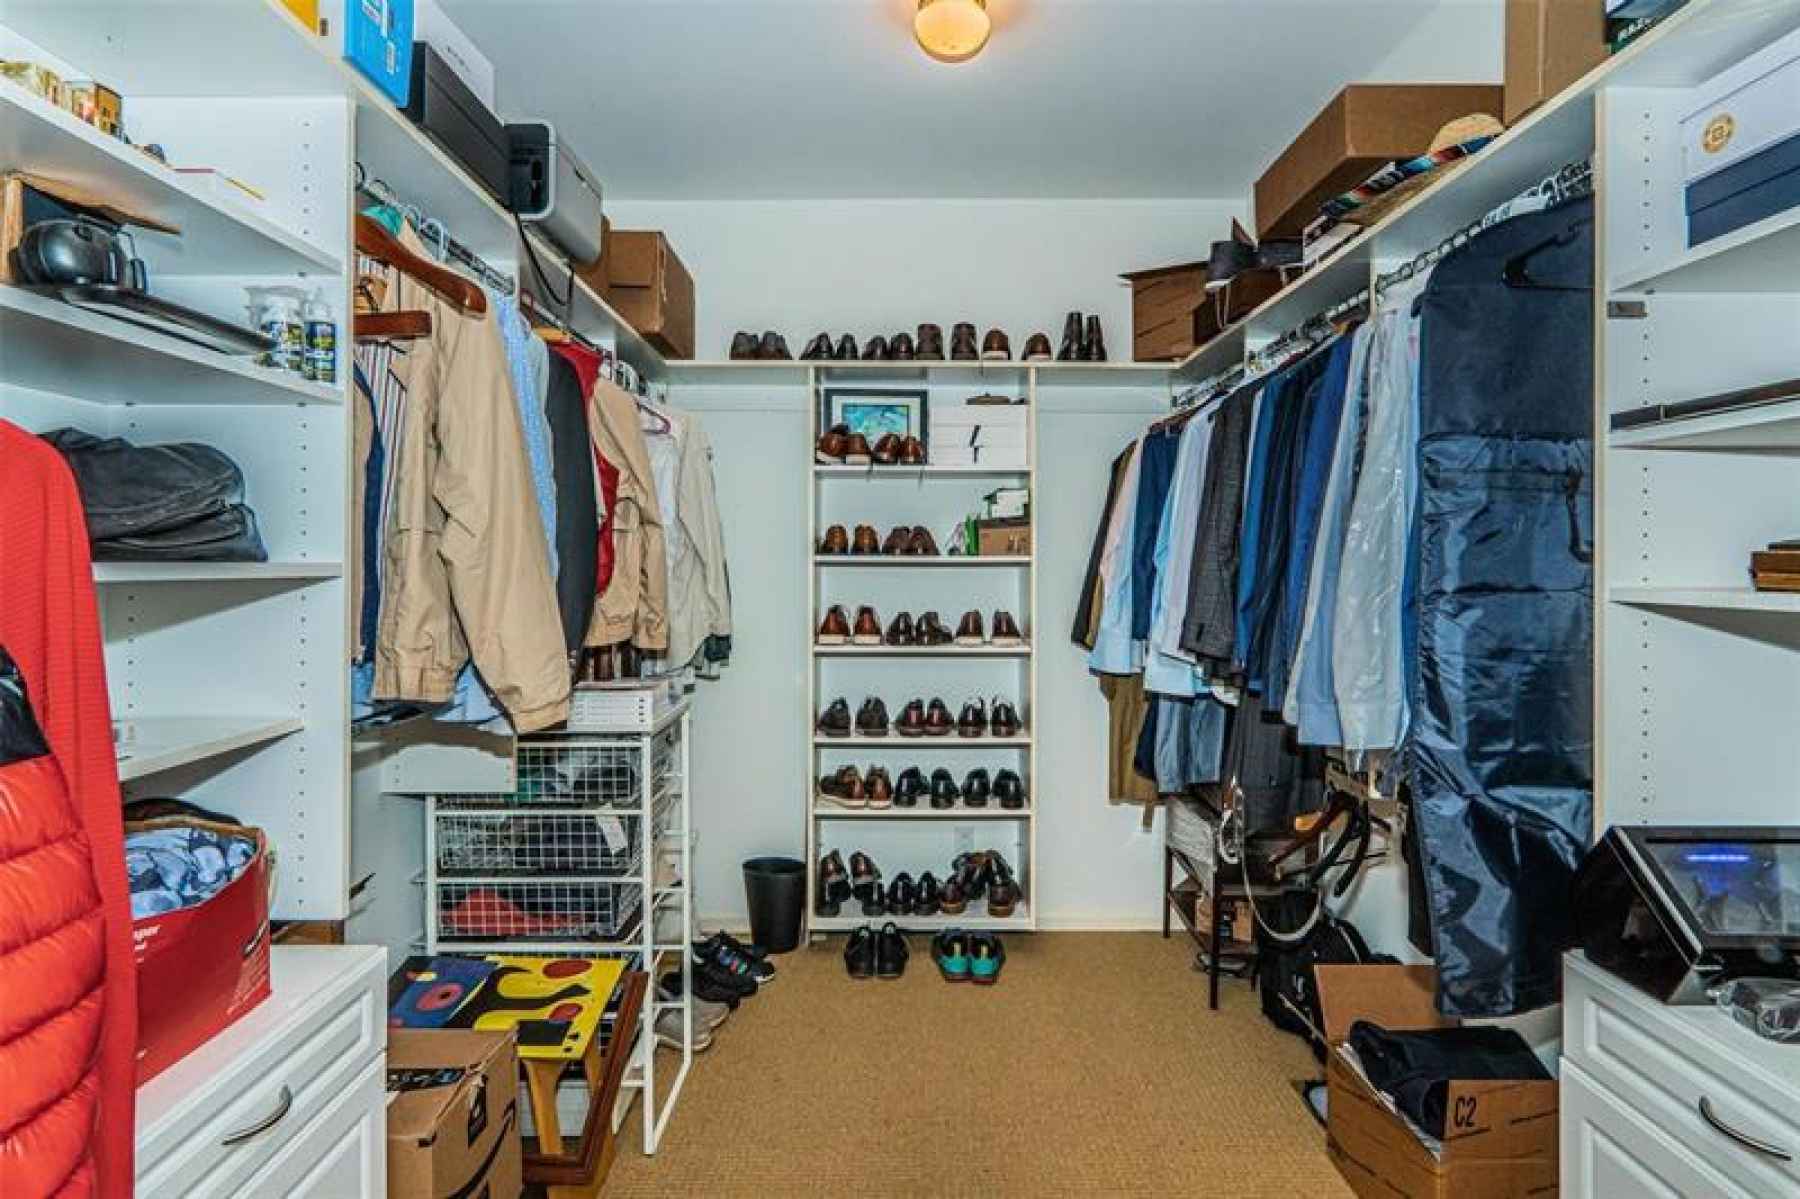 Owner's closet